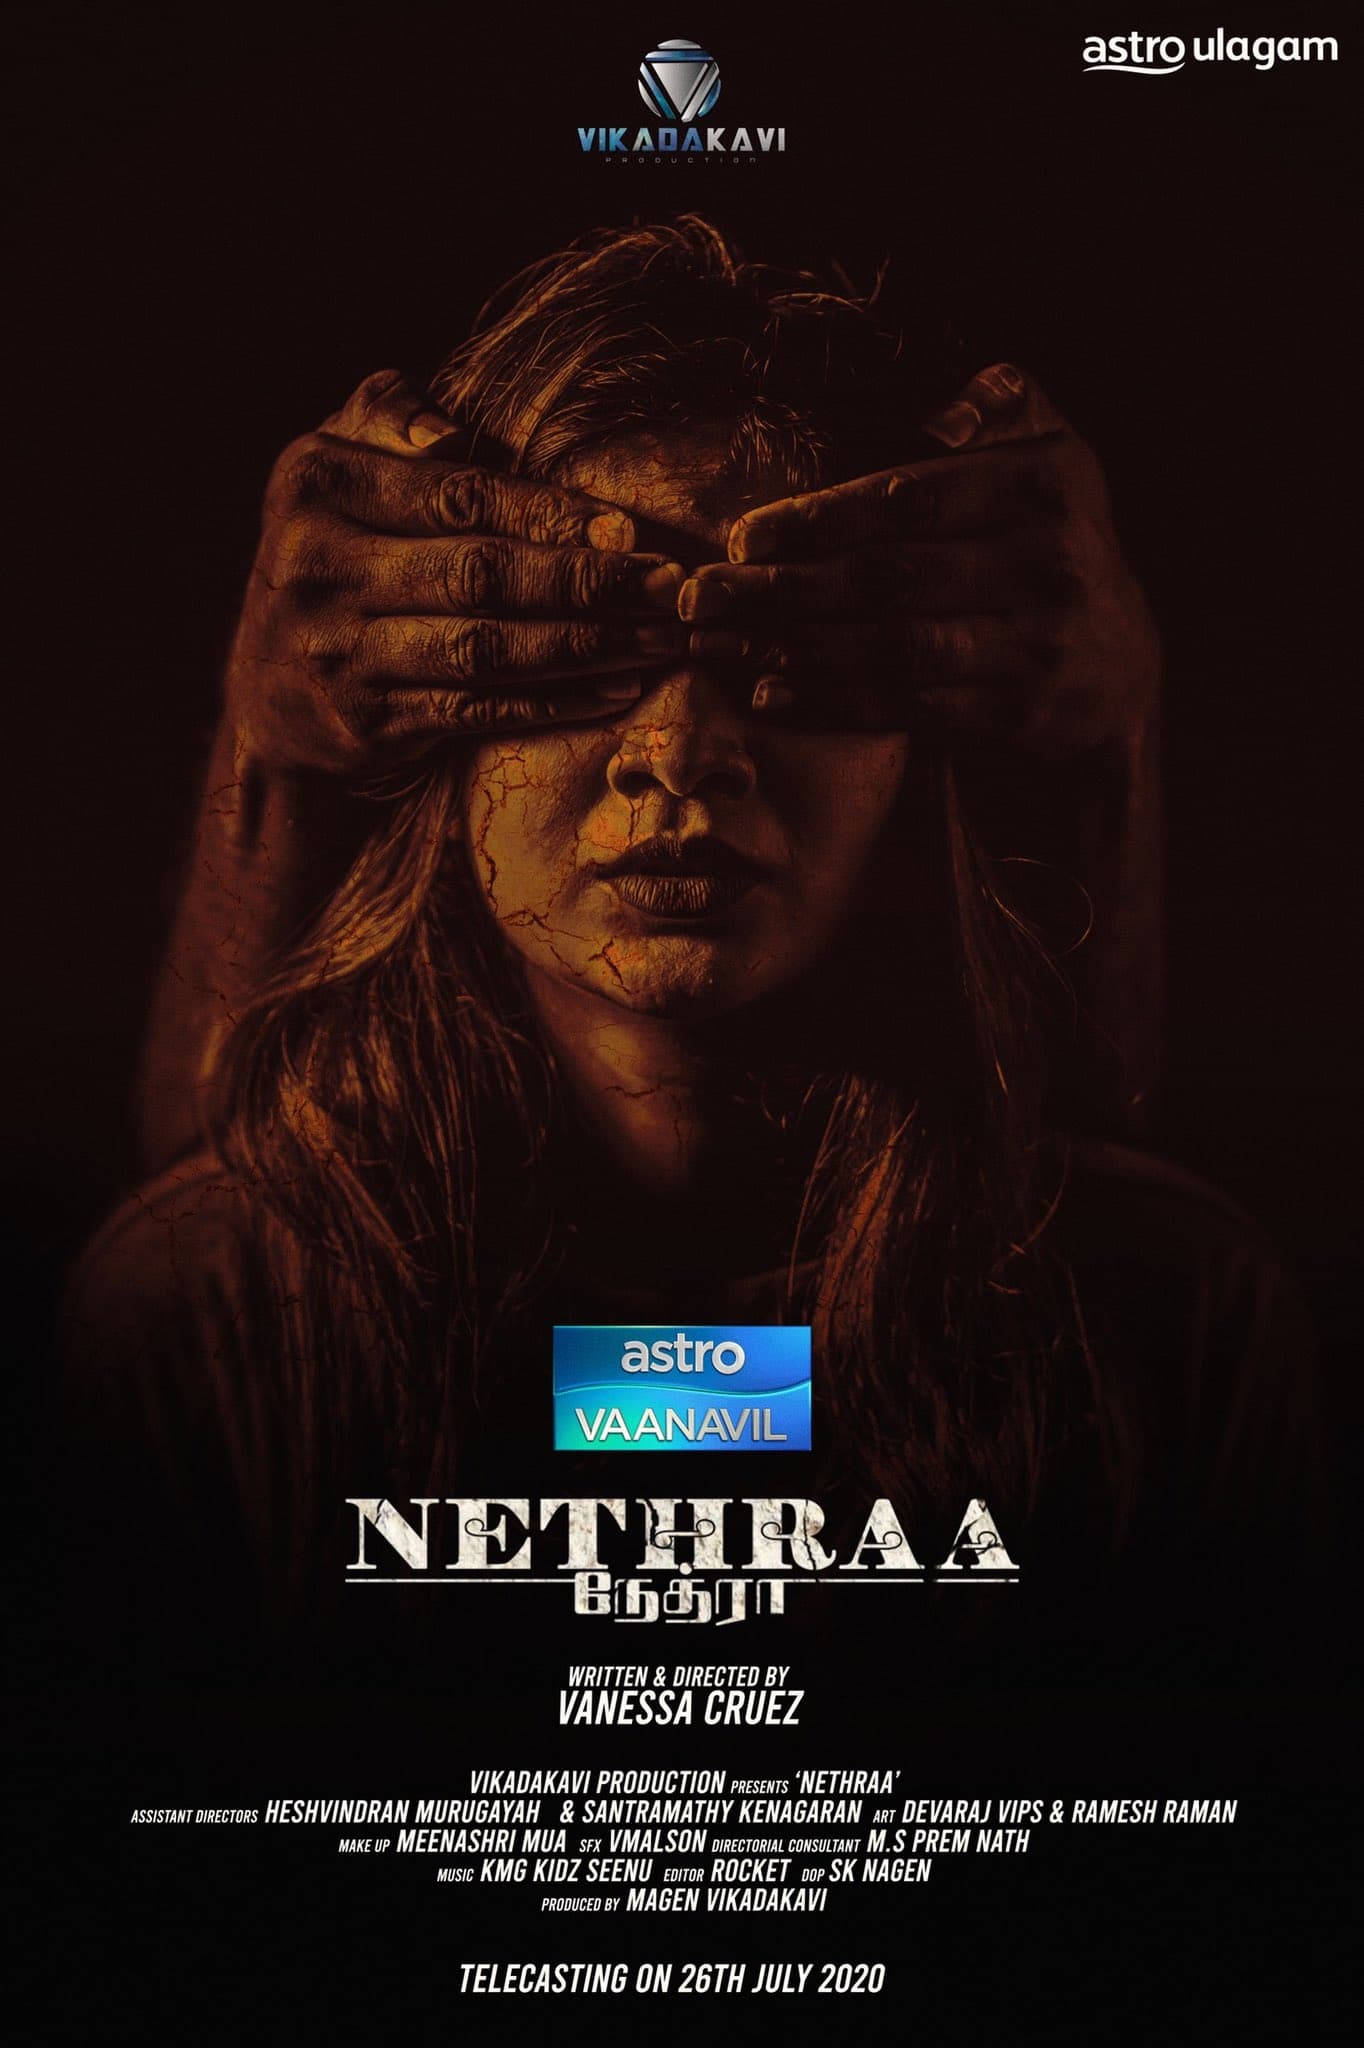 Neethraa